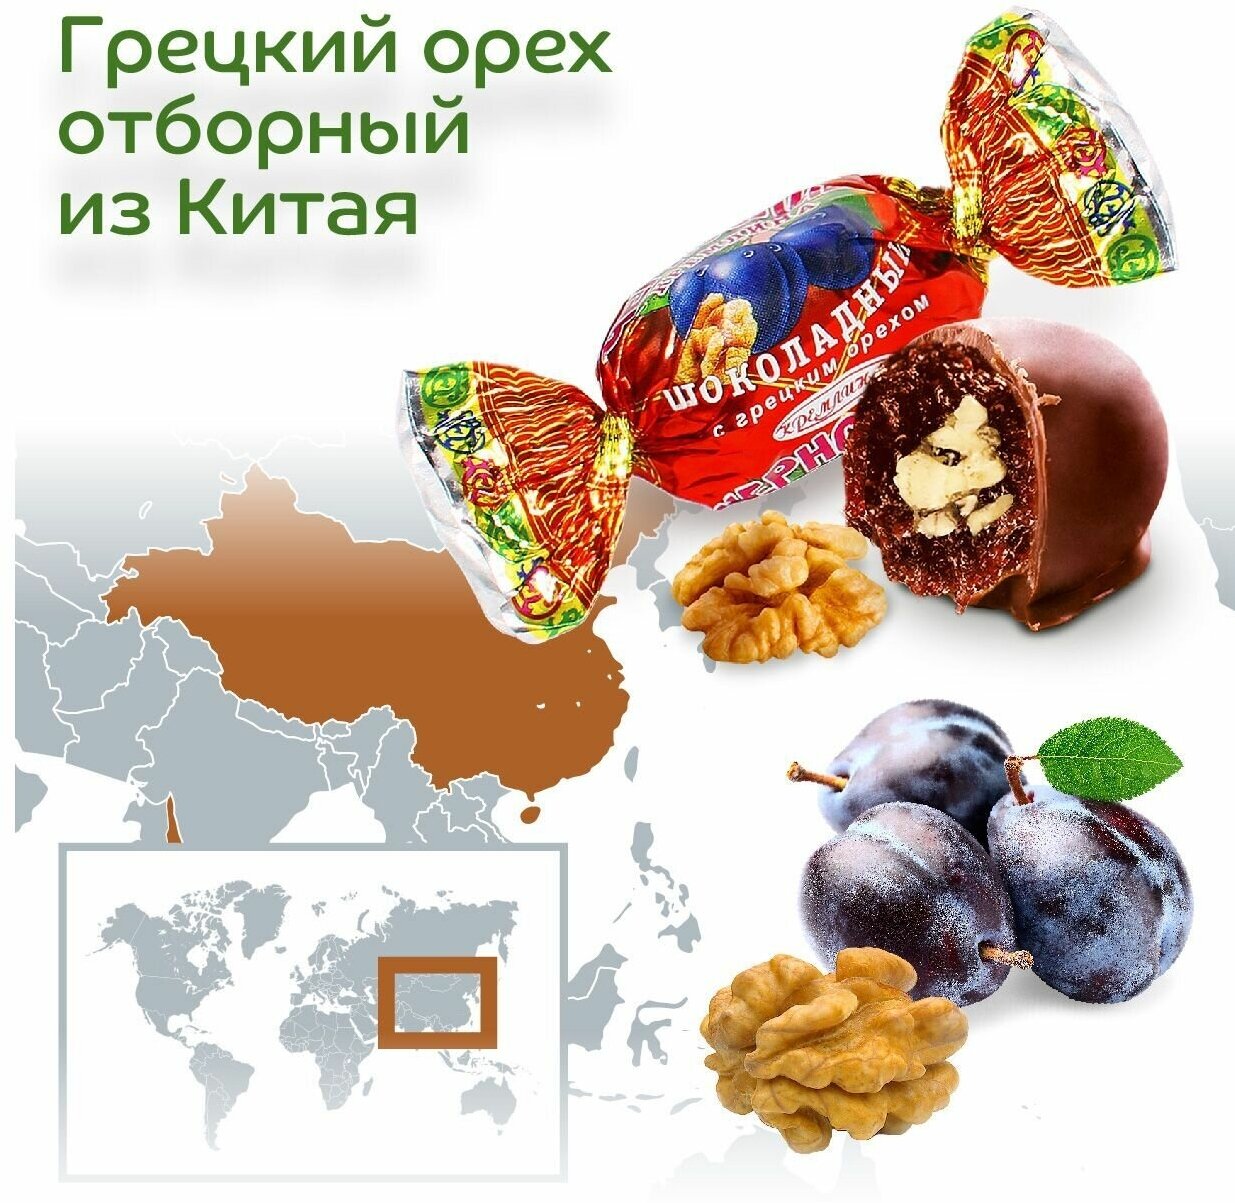 Конфеты Чернослив Шоколадный с Грецким Орехом, пакет 600 гр